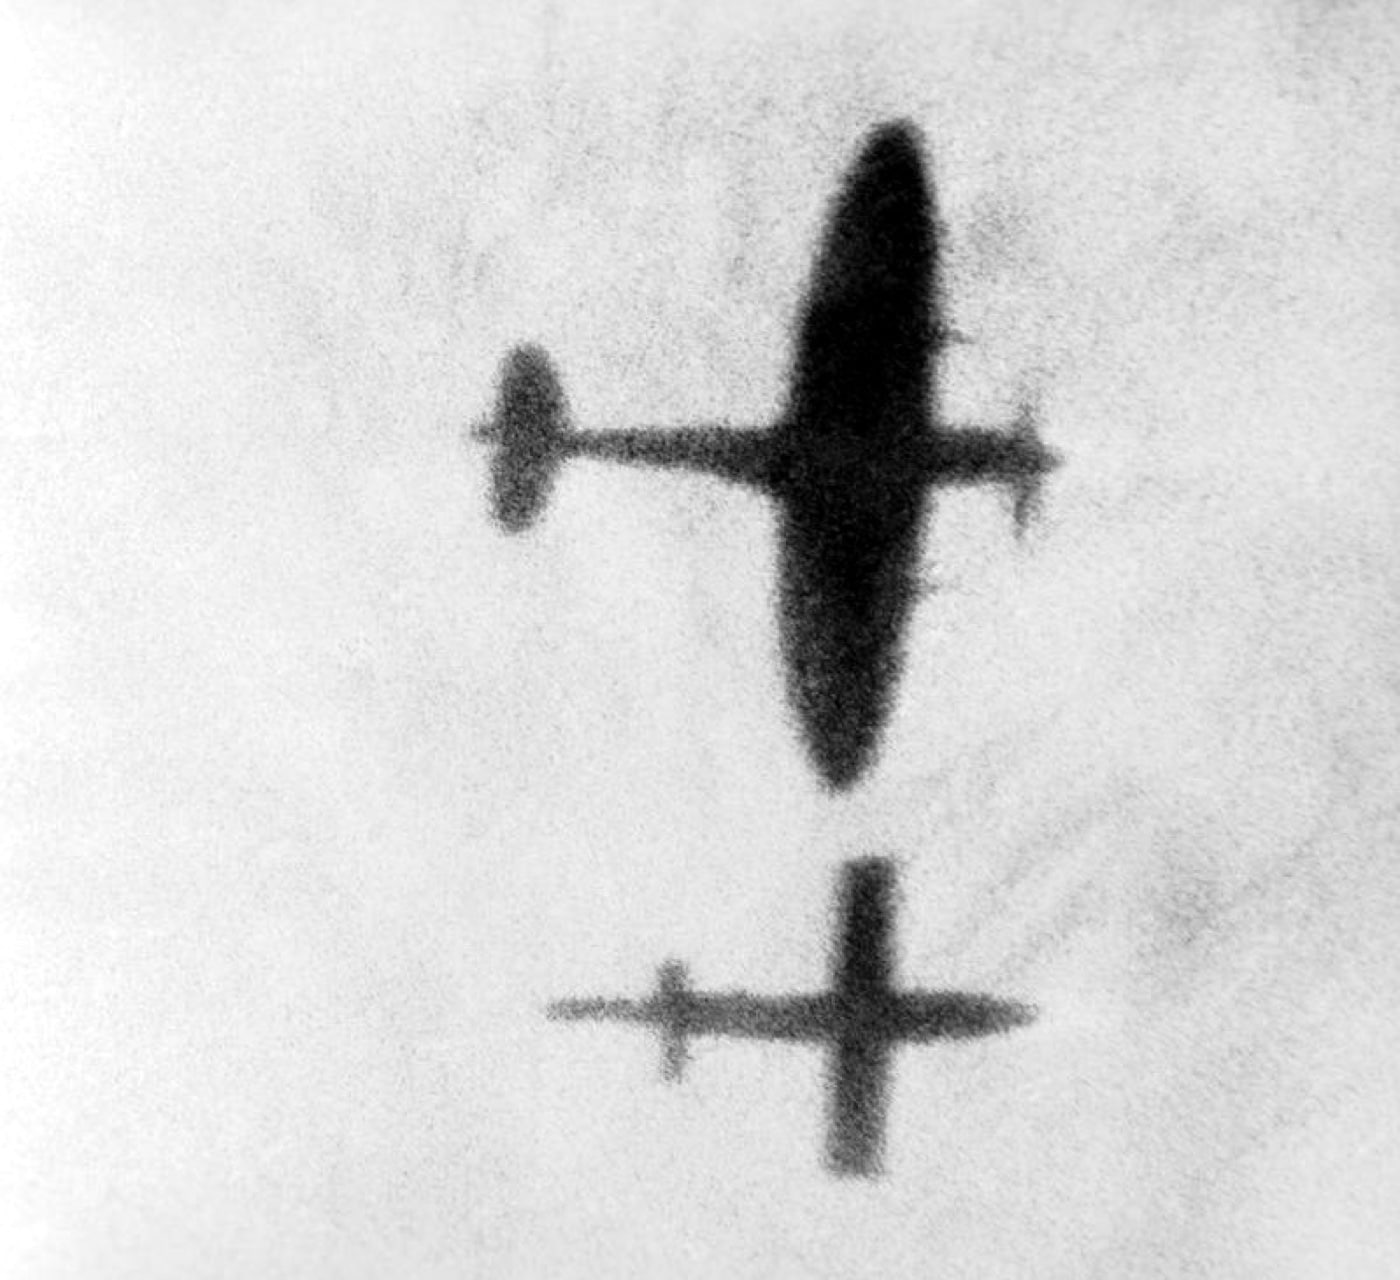 spitfire pilot tips wing of v-1 bomb mid-flight